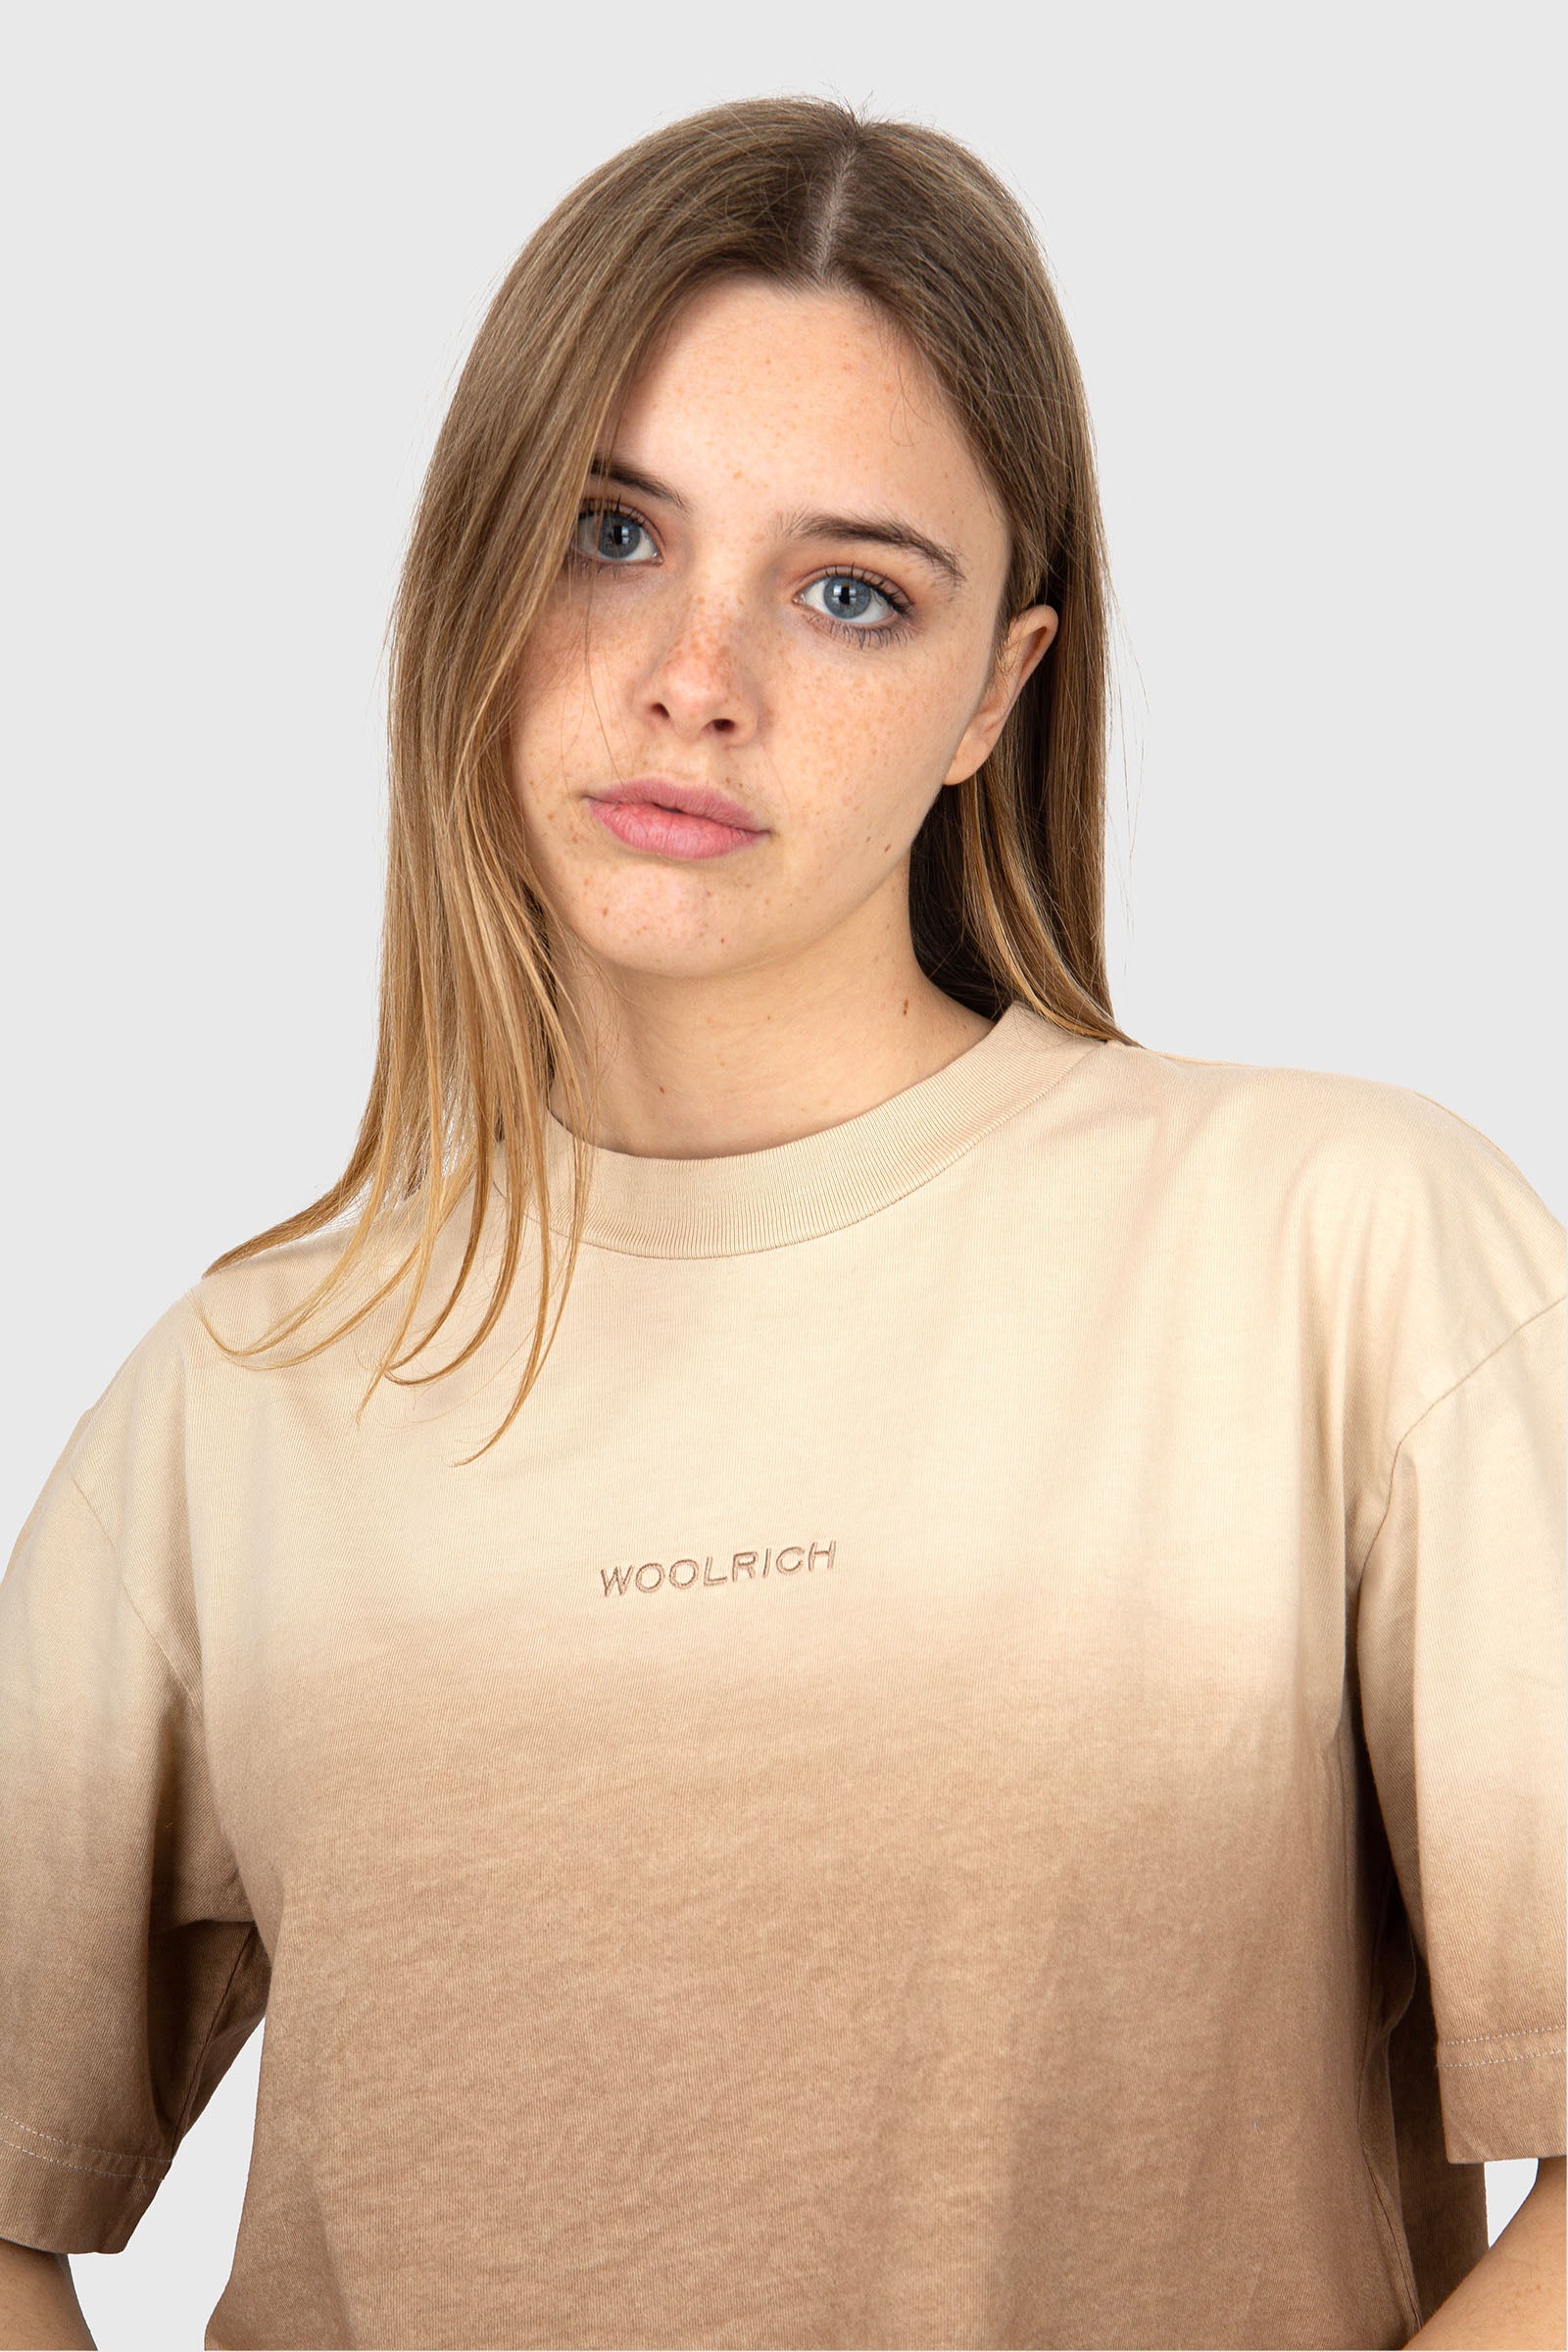 Woolrich T-Shirt Tye Dye Cotton Beige - 1